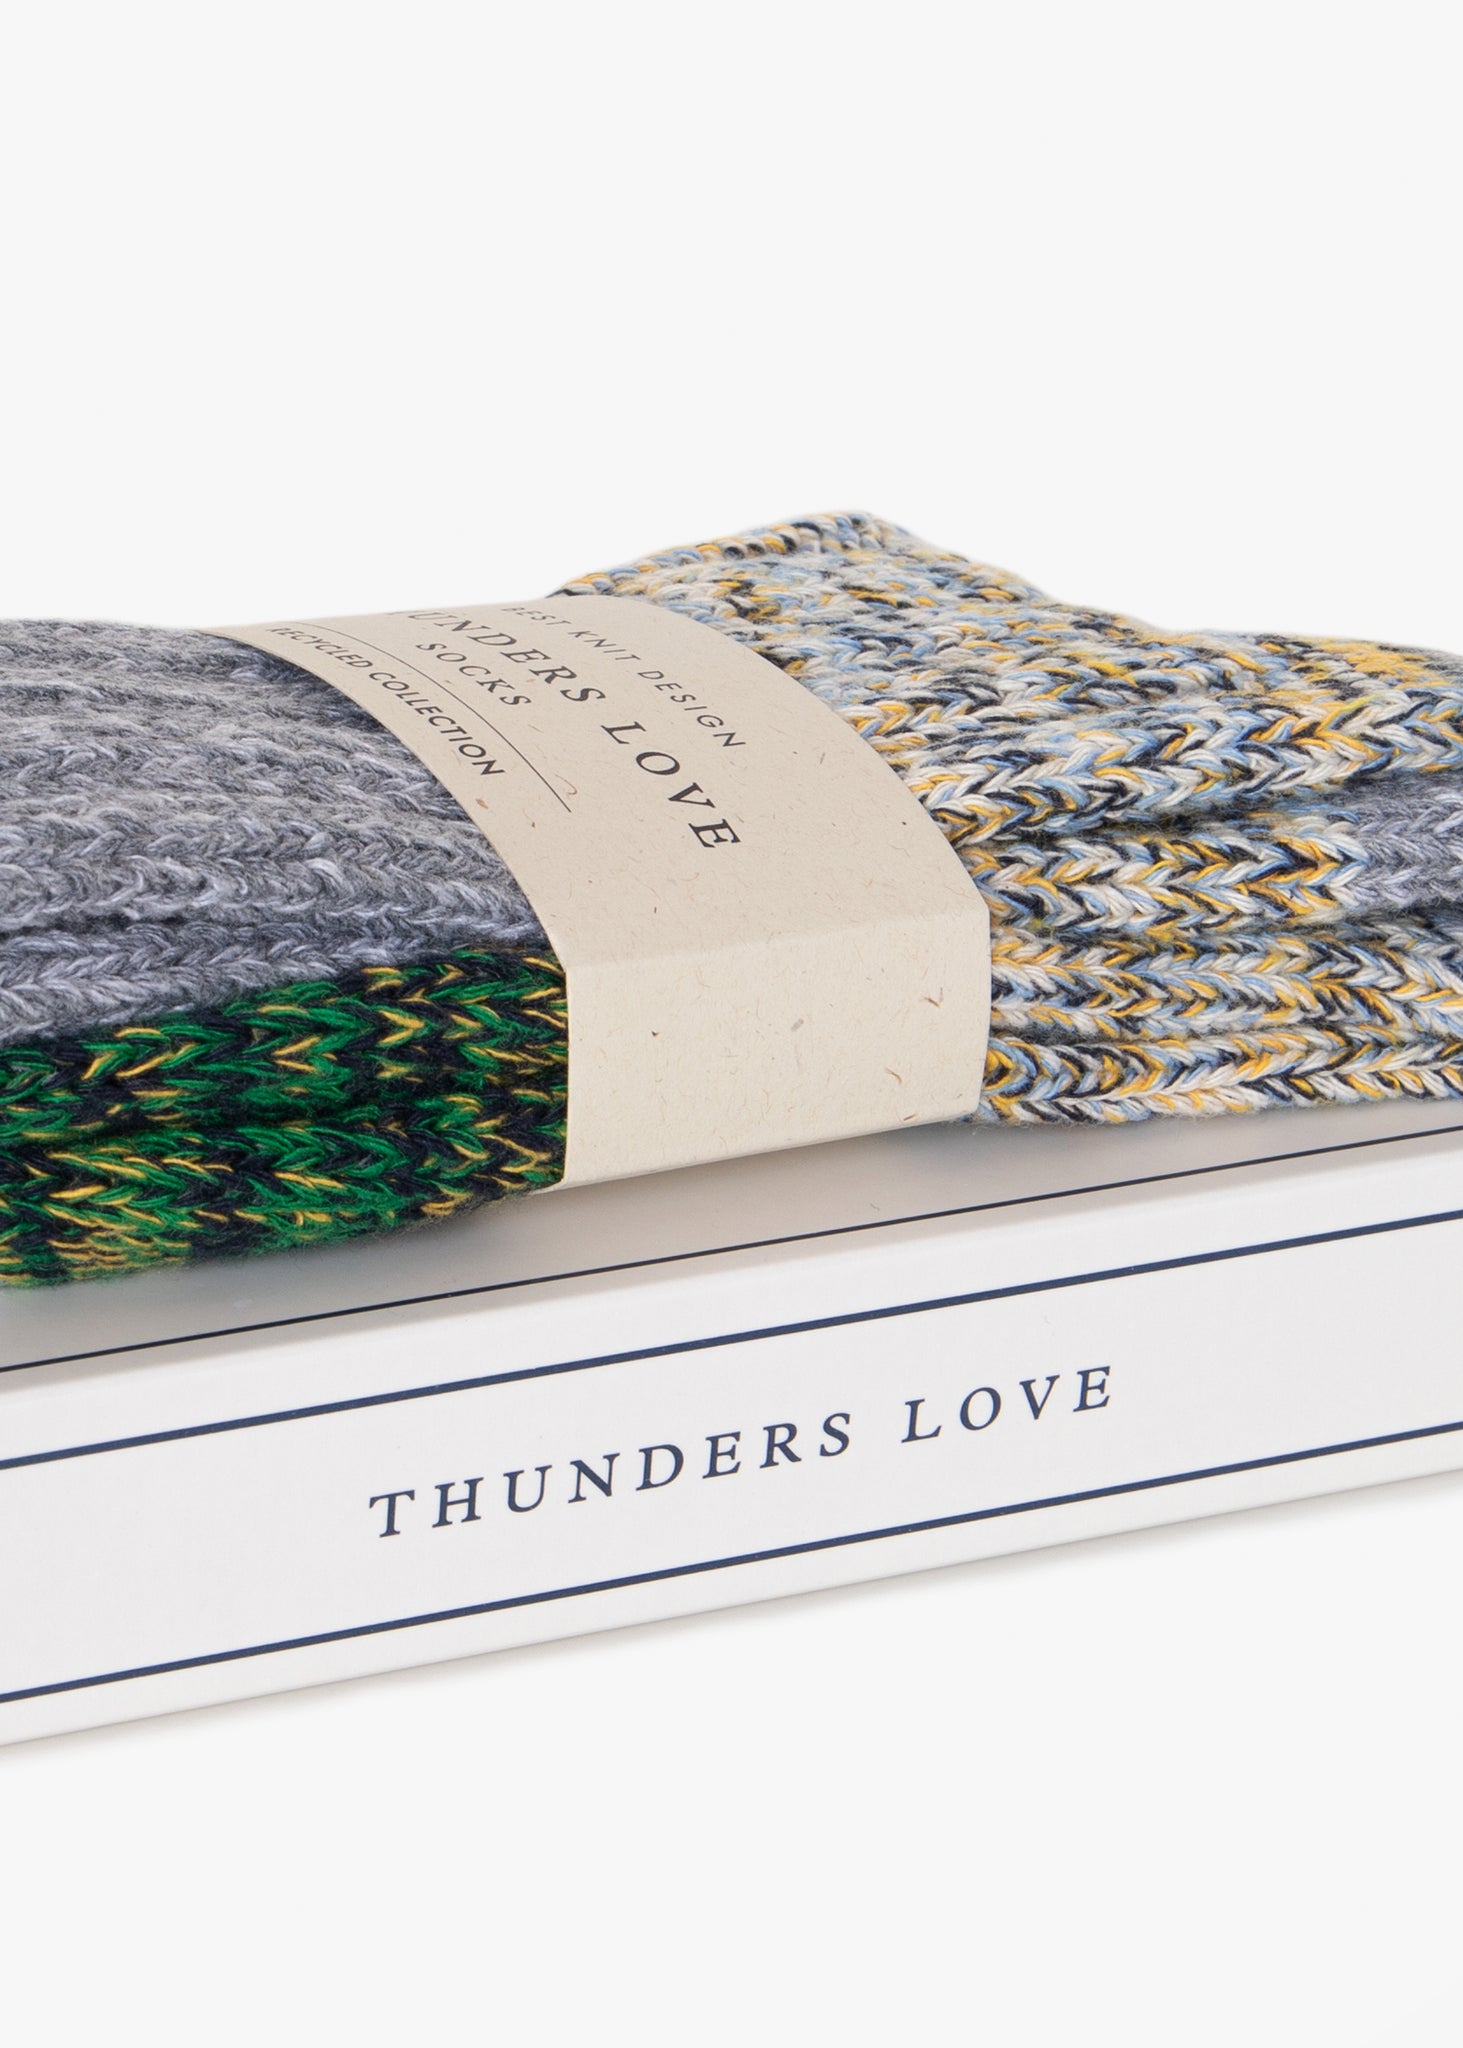 Thunders Love Helen Grey Socks